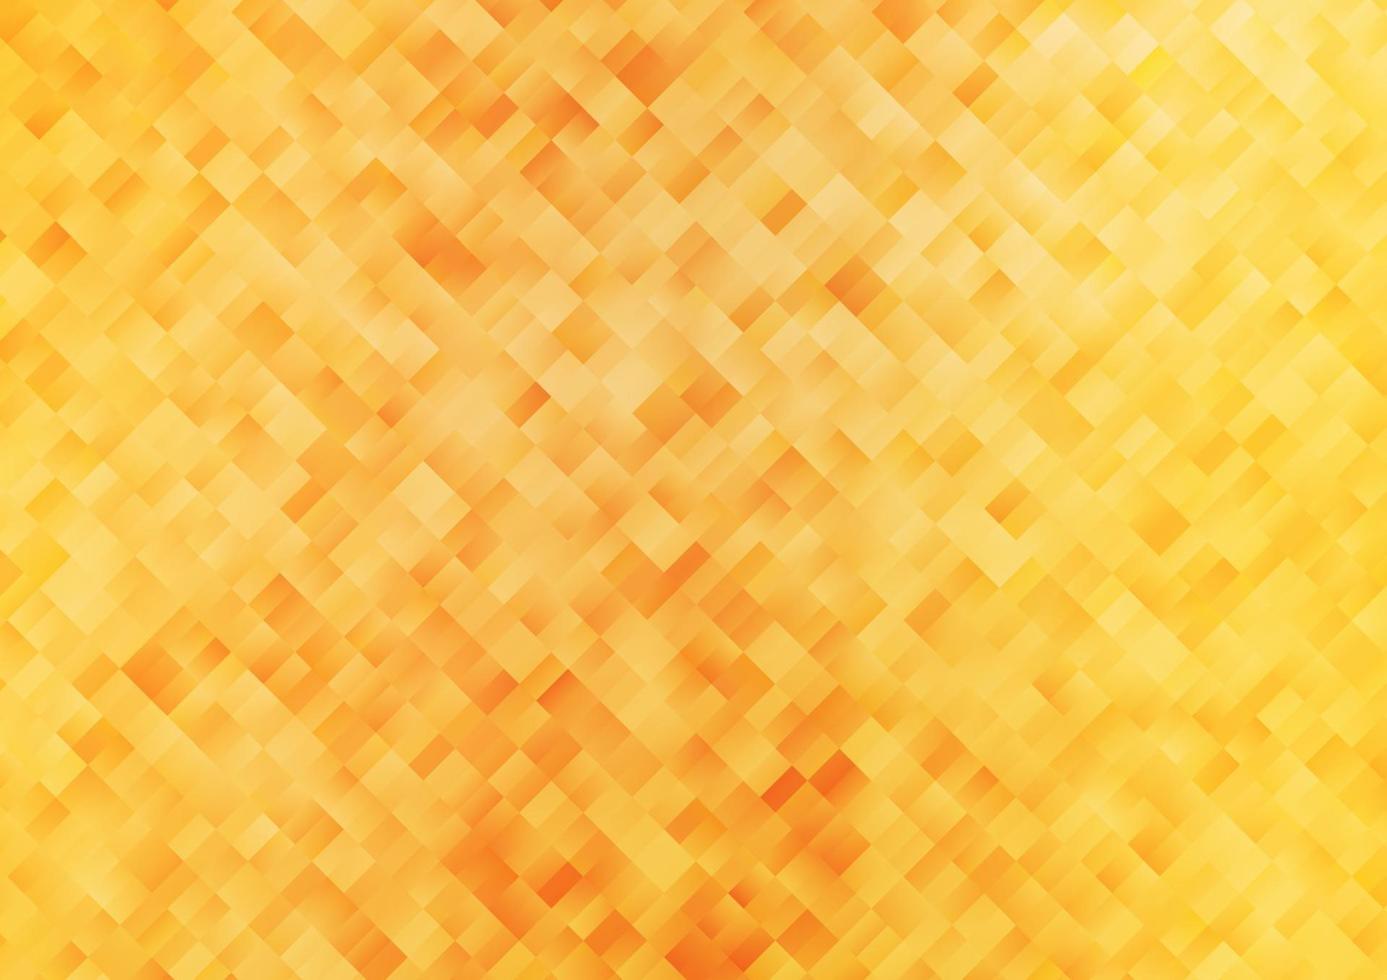 cubierta de vector naranja claro en estilo poligonal.